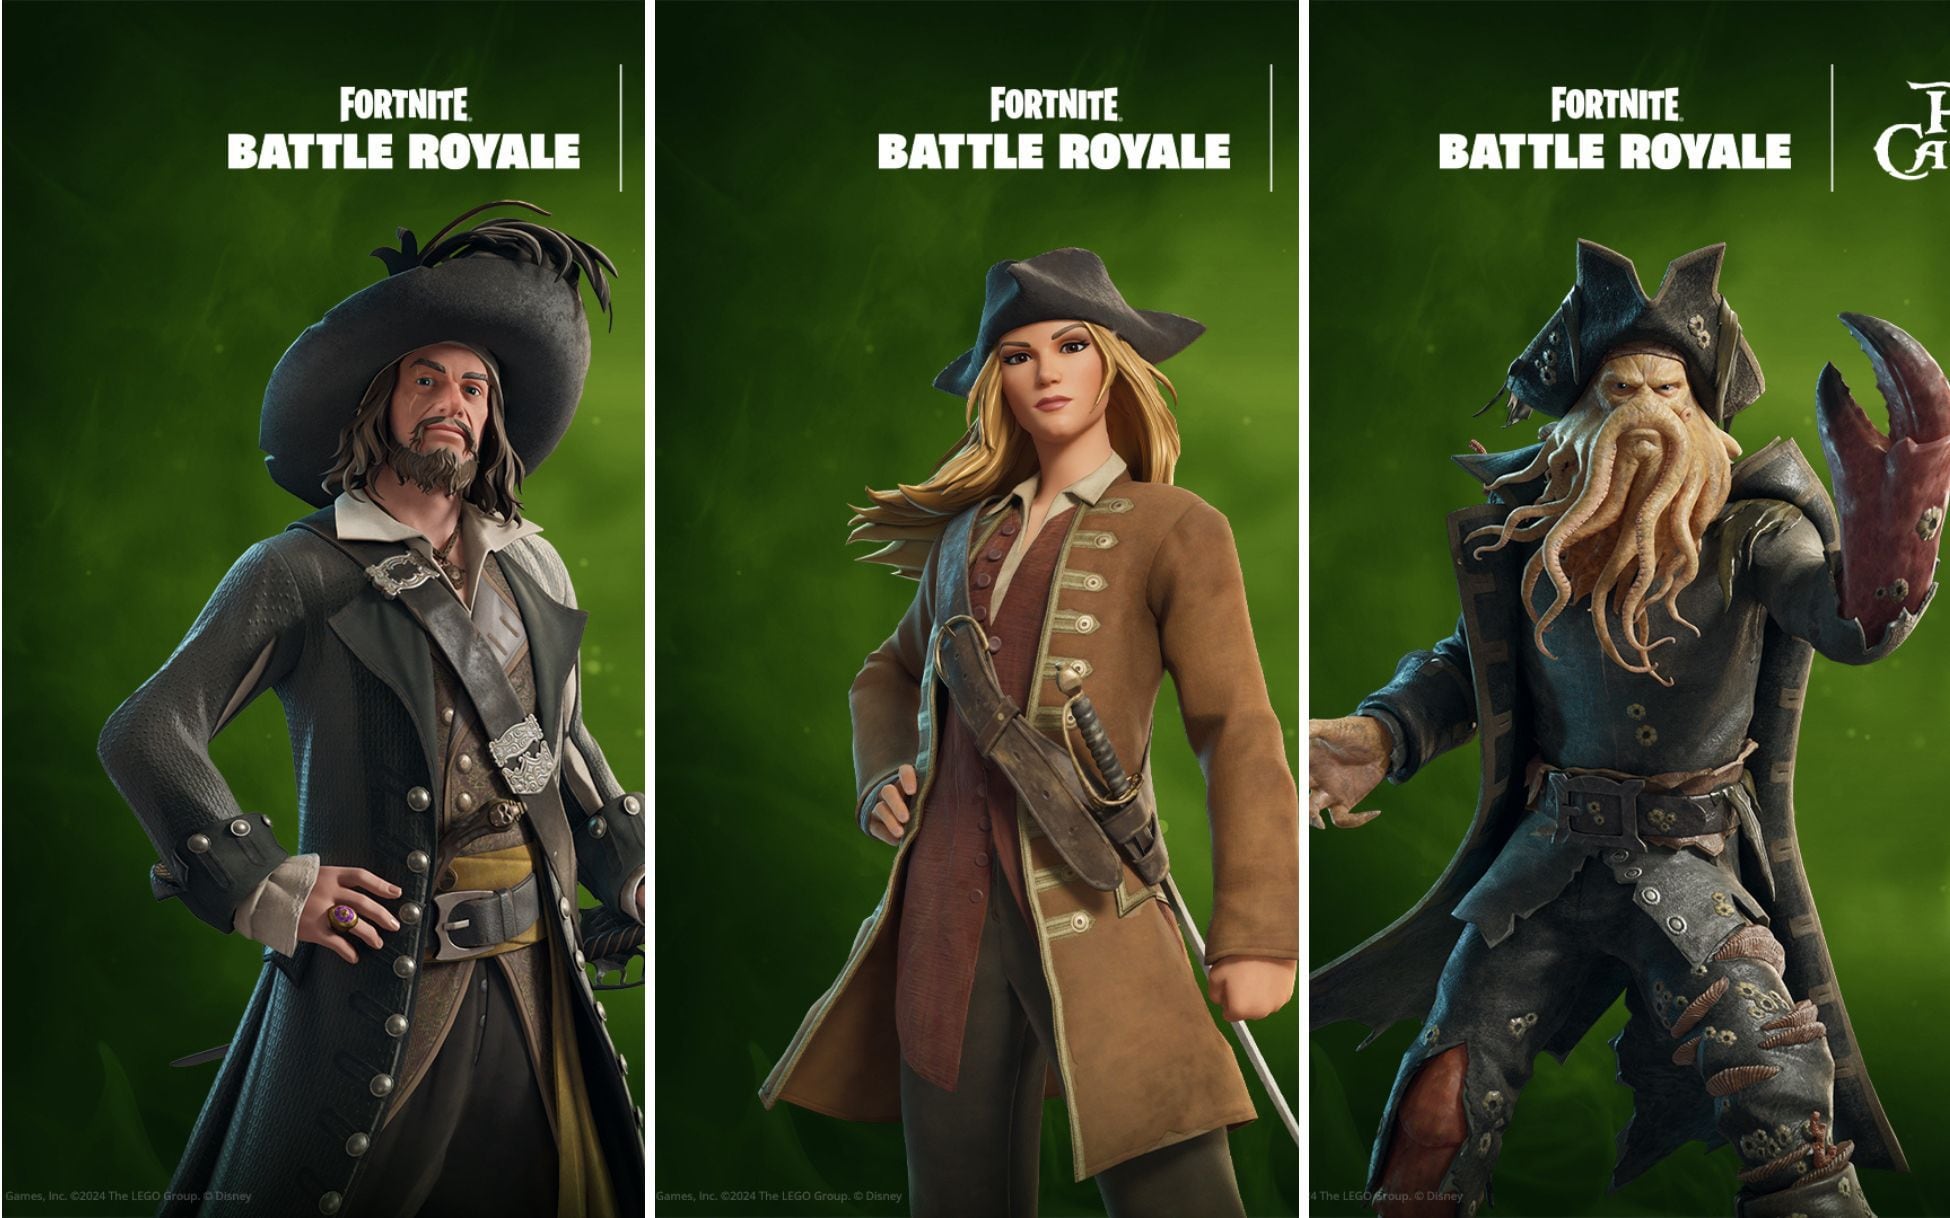 De izquierda a derecha: Capitán Barbosa, Elizabeth Swan y Davy Jones. Foto: Sitio web de Fornite.